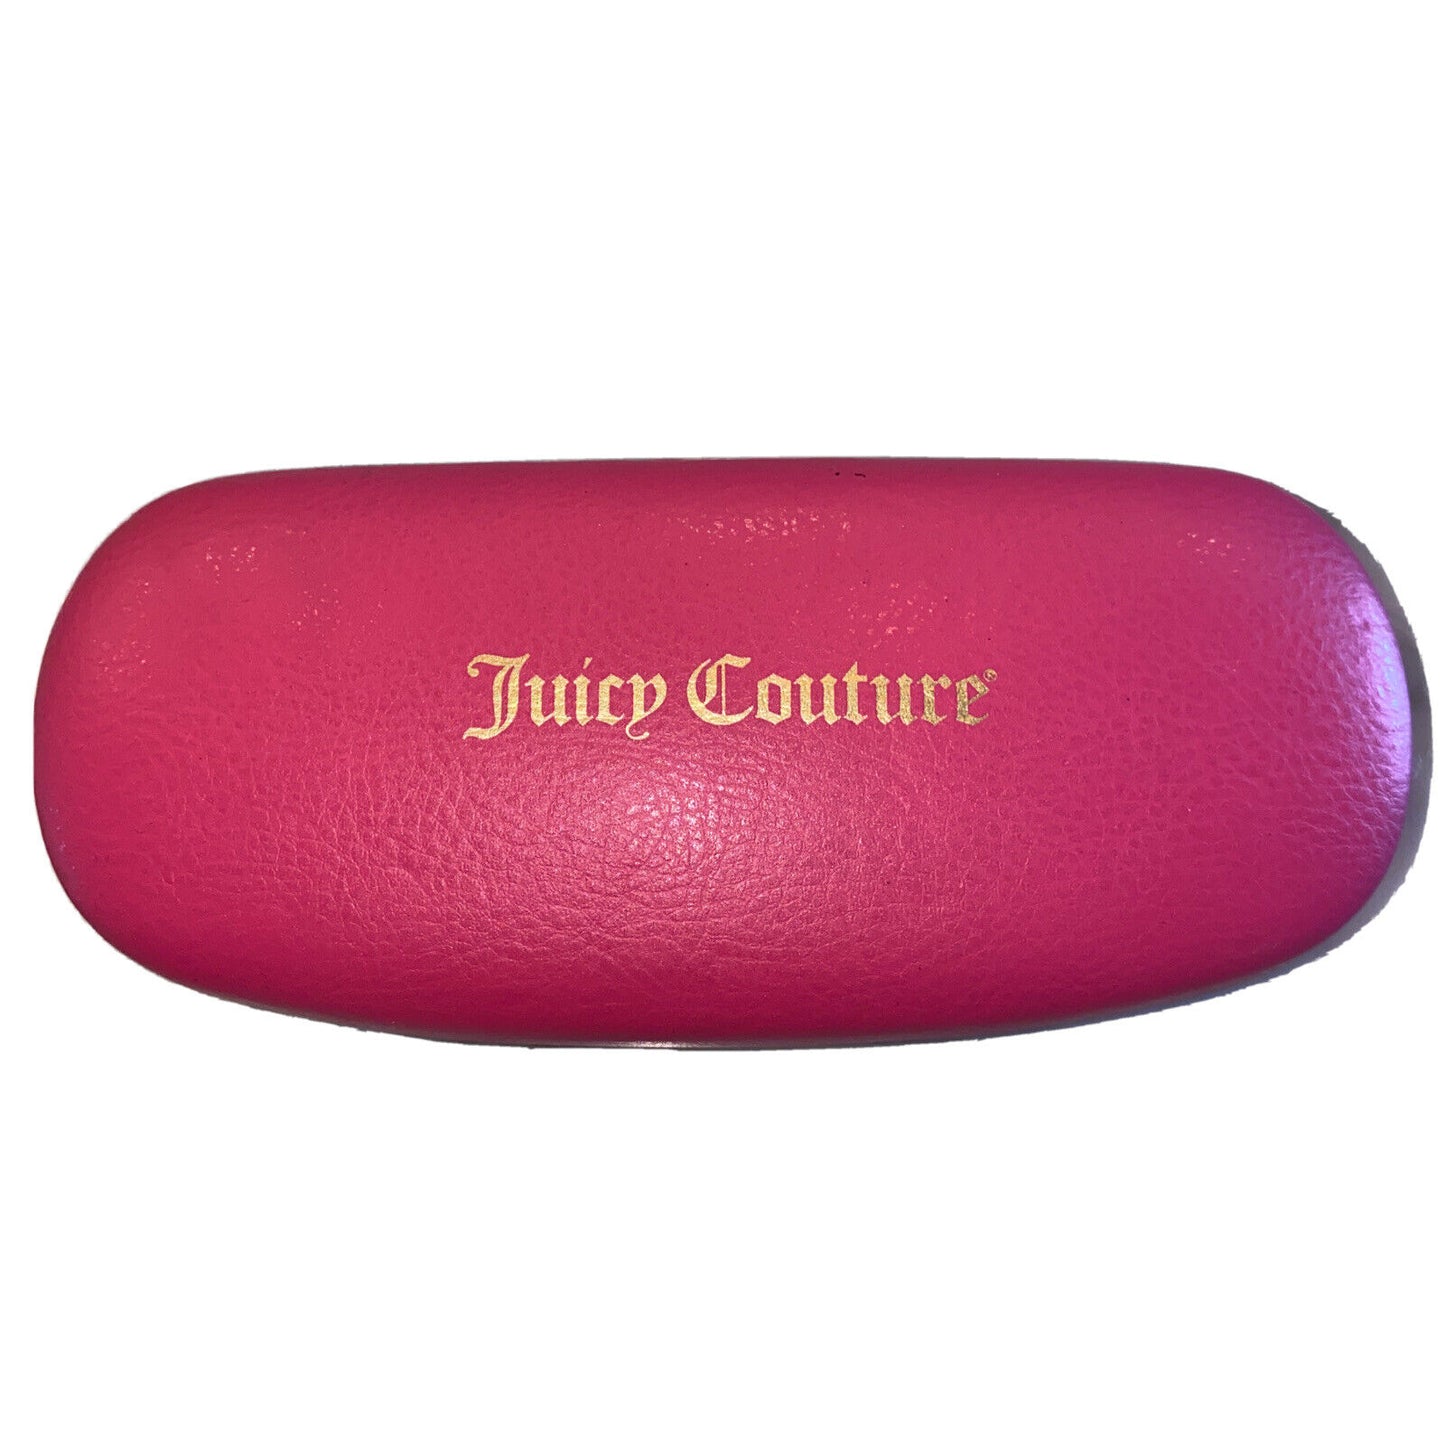 Juicy Couture JU 236-022C 00 54mm New Eyeglasses